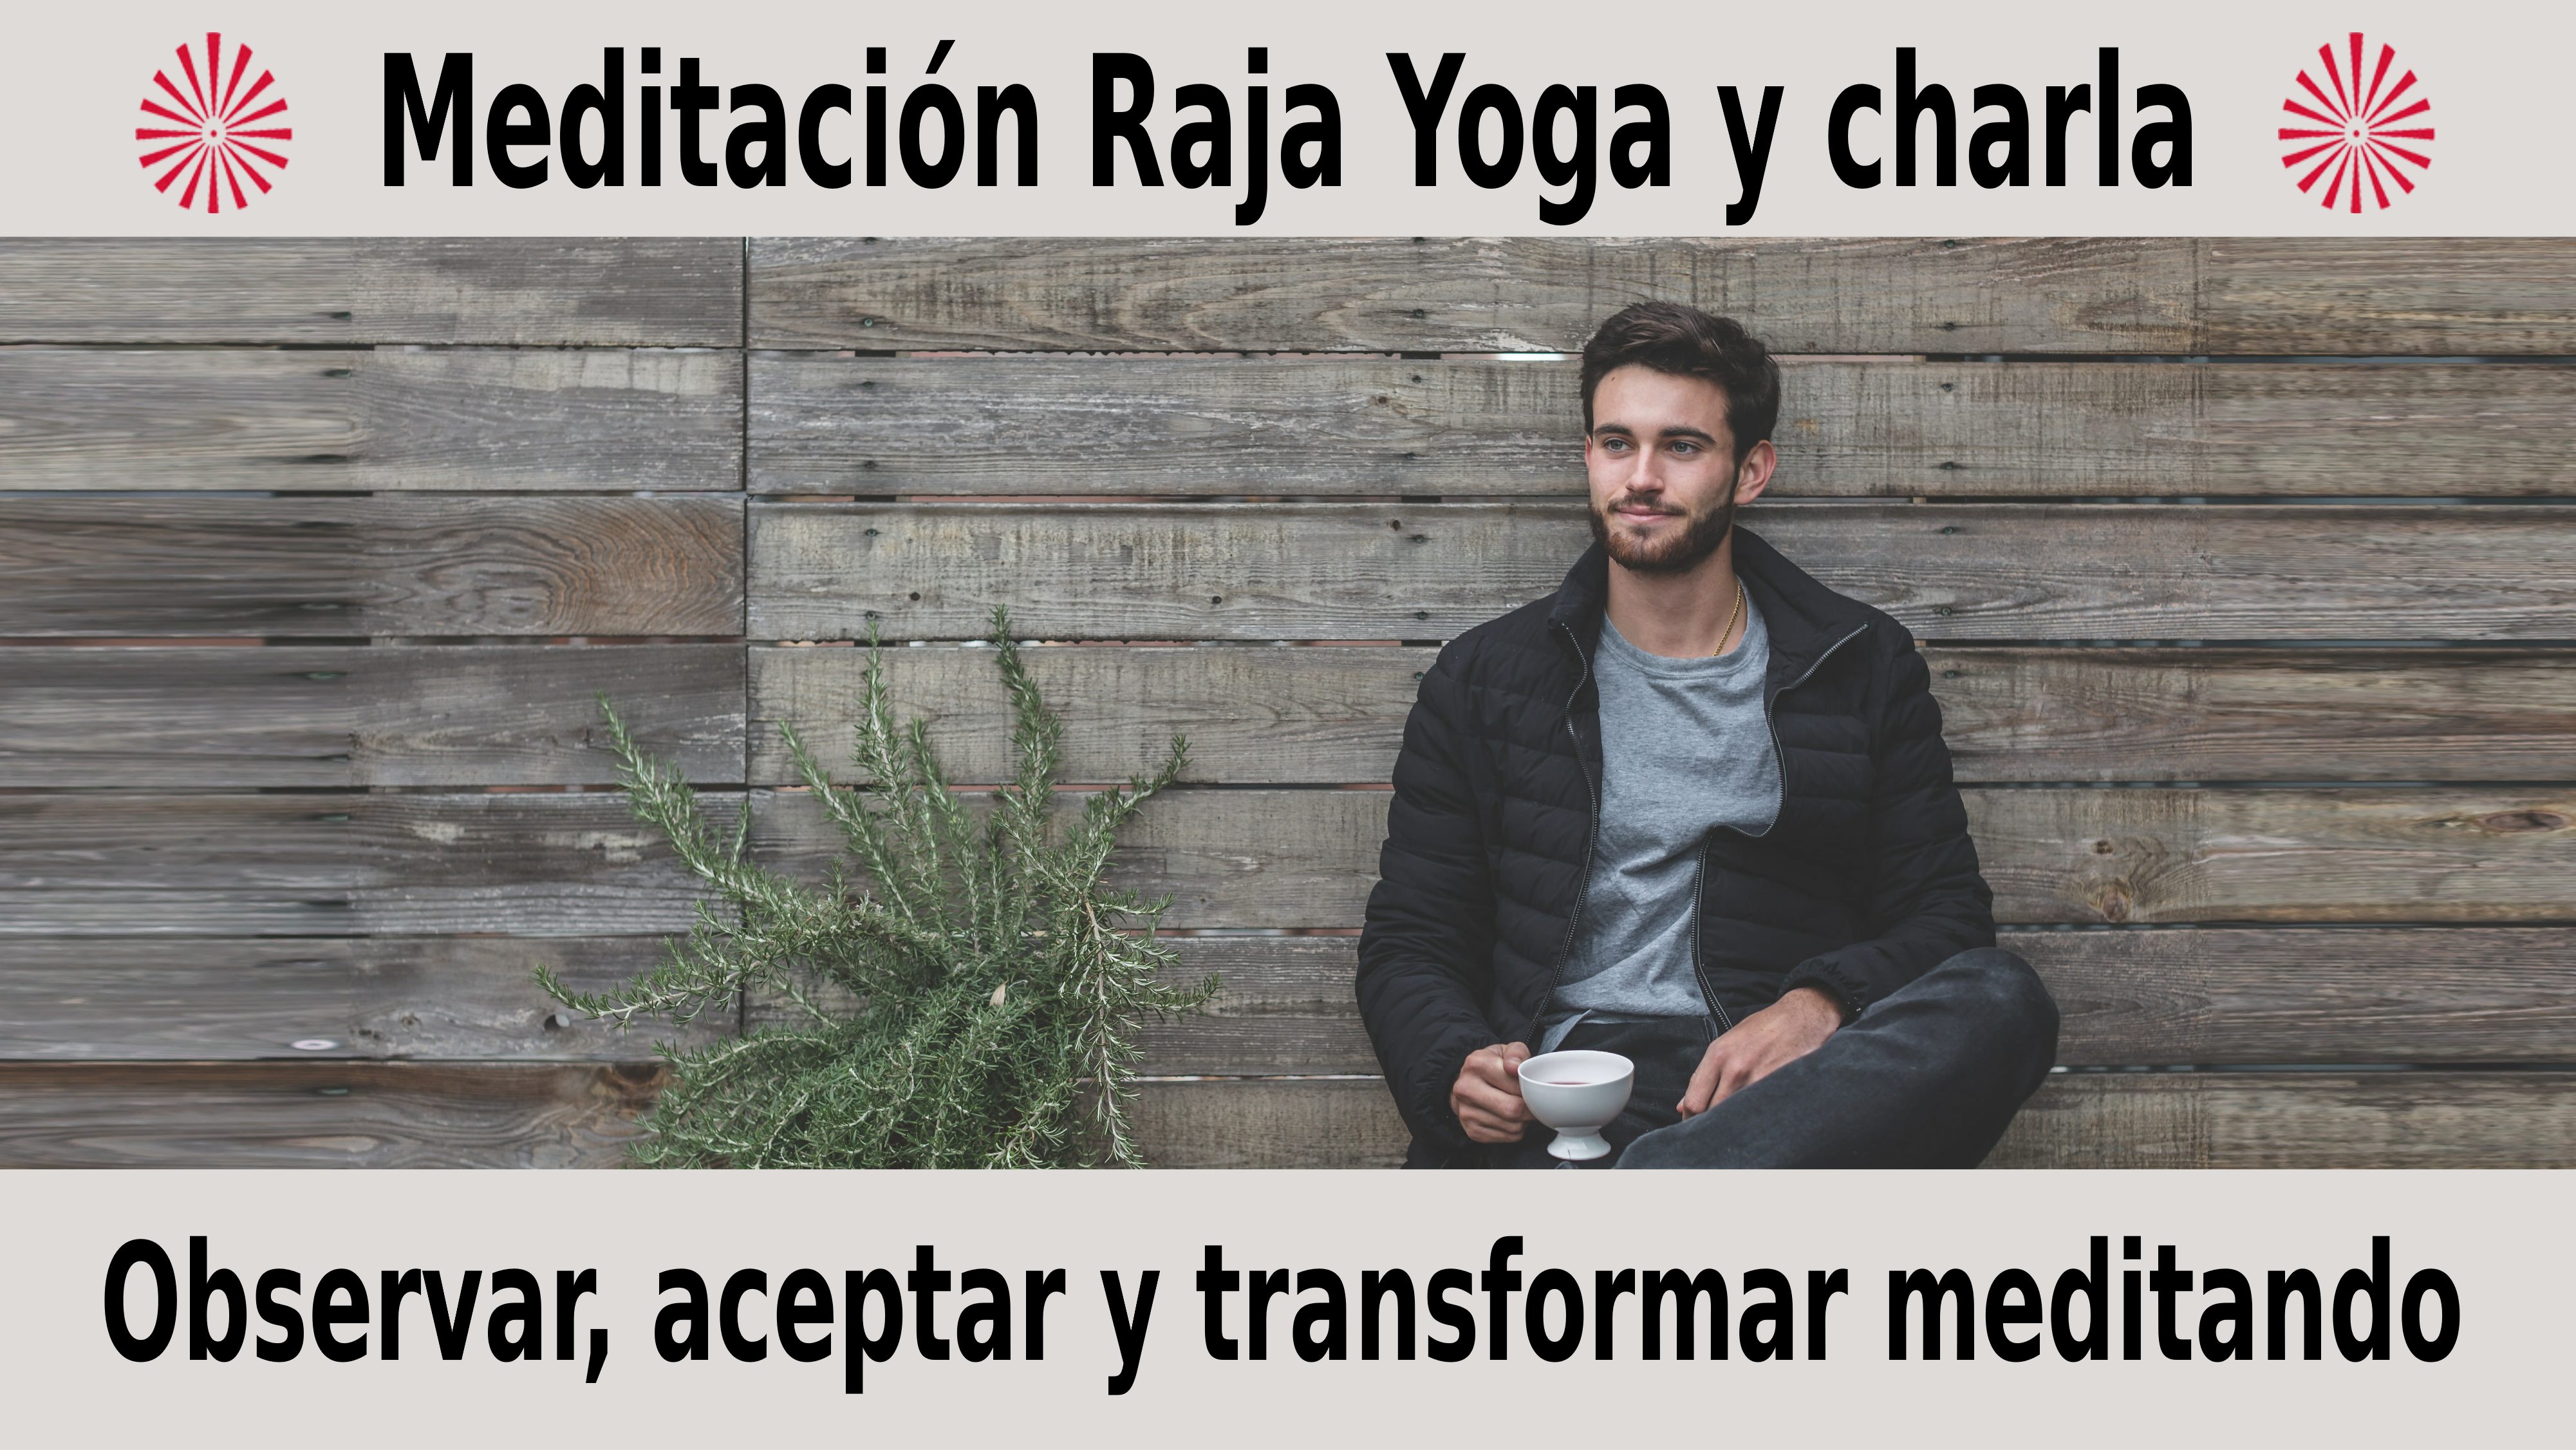 Meditación Raja Yoga y charla: Observar, aceptar y transformar meditando (9 Diciembre 2020) On-line desde Sevilla